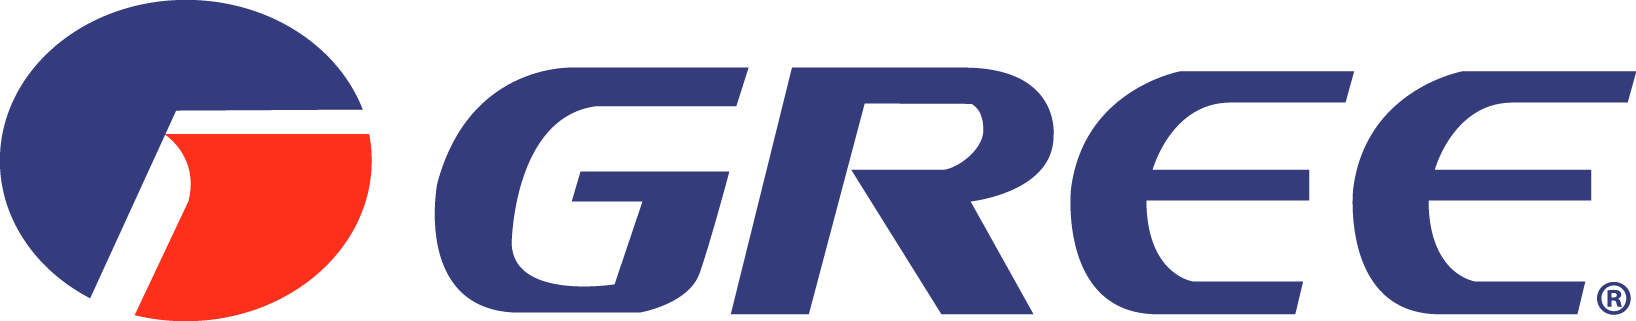 Gree Logo png